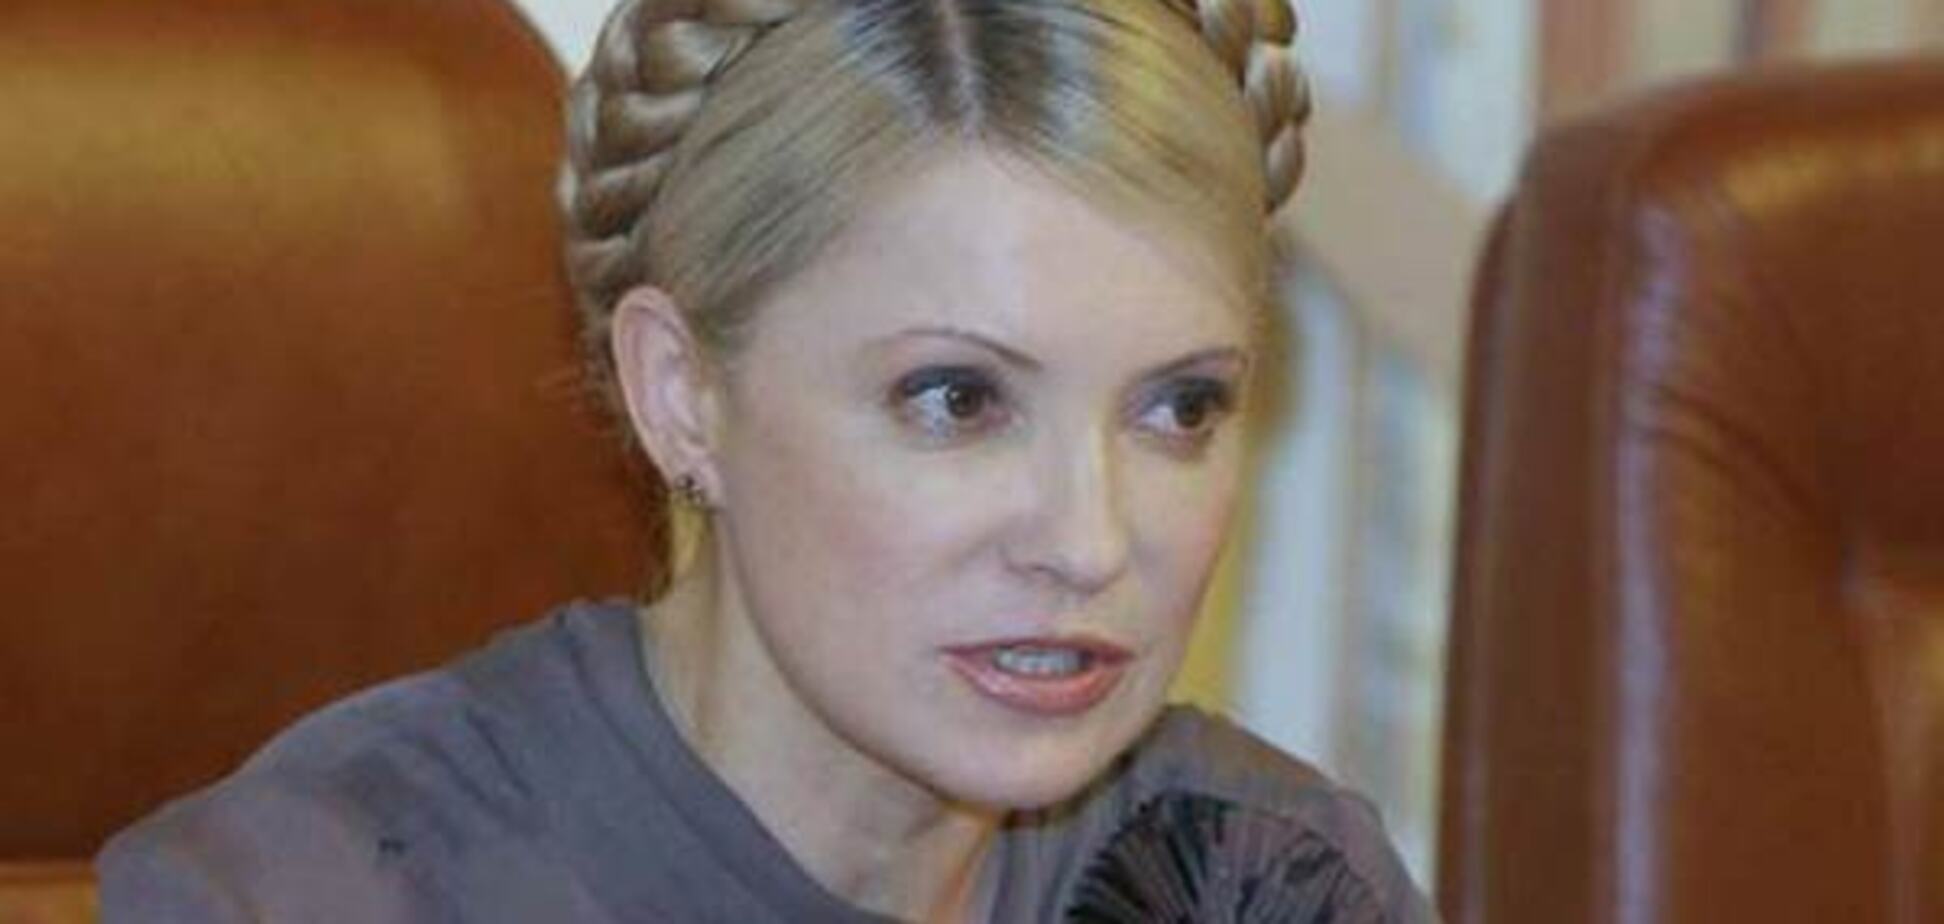 Рада поставила Тимошенко неуд